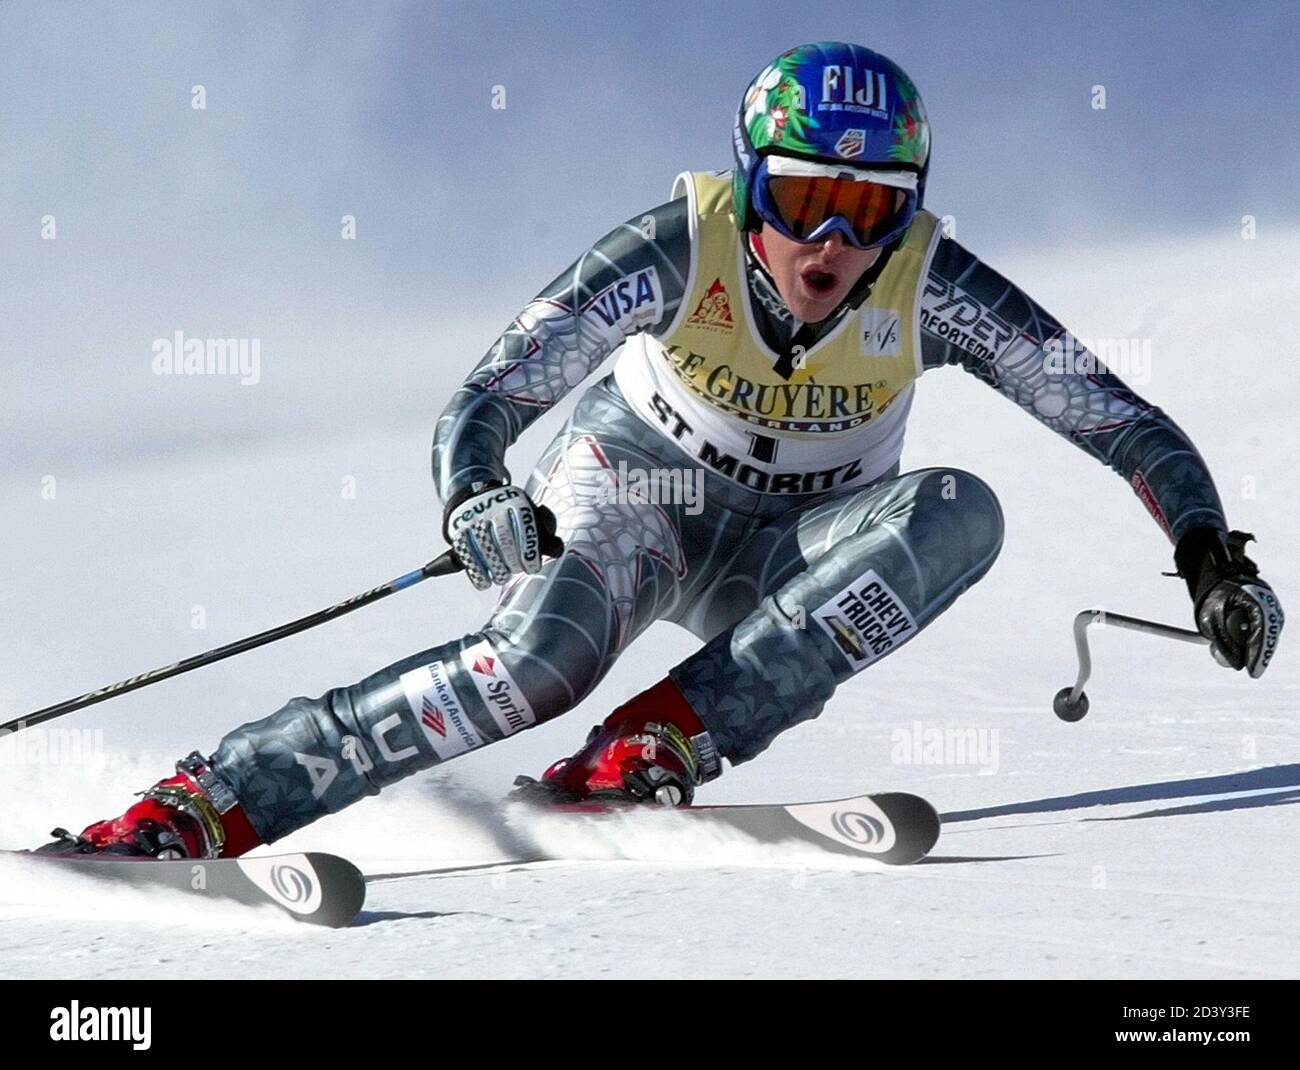 Caroline Lalive aus den Vereinigten Staaten beschleunigt die Strecke beim Alpin Ski World Cup Frauen-Downhill-Rennen in St. Moritz, 21. Dezember 2001. Sylviane Berthod aus der Schweiz gewann in einer Zeit von einer Minute 34.05 Sekunden. Lalive belegte den 10. Platz. REUTERS/Ruben Sprich RS Stockfoto